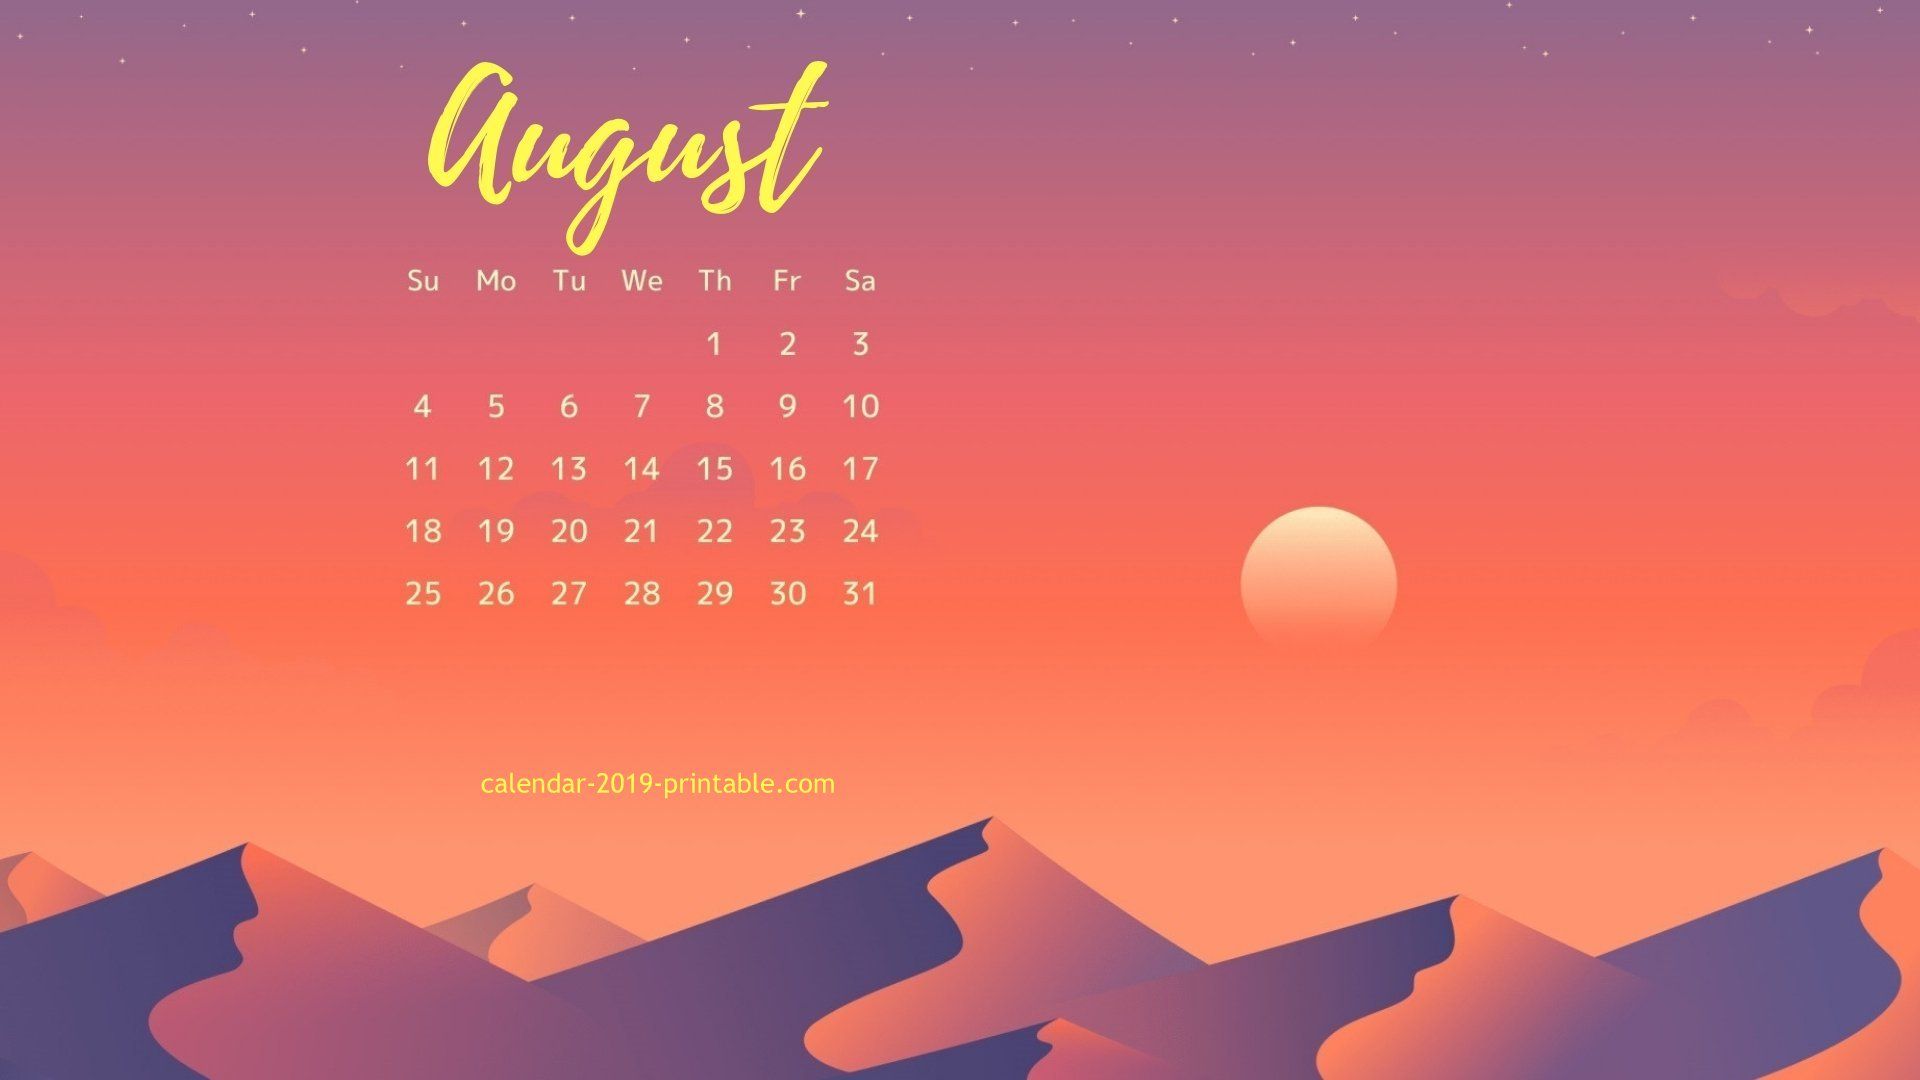 August Calendar Wallpaper Calendars